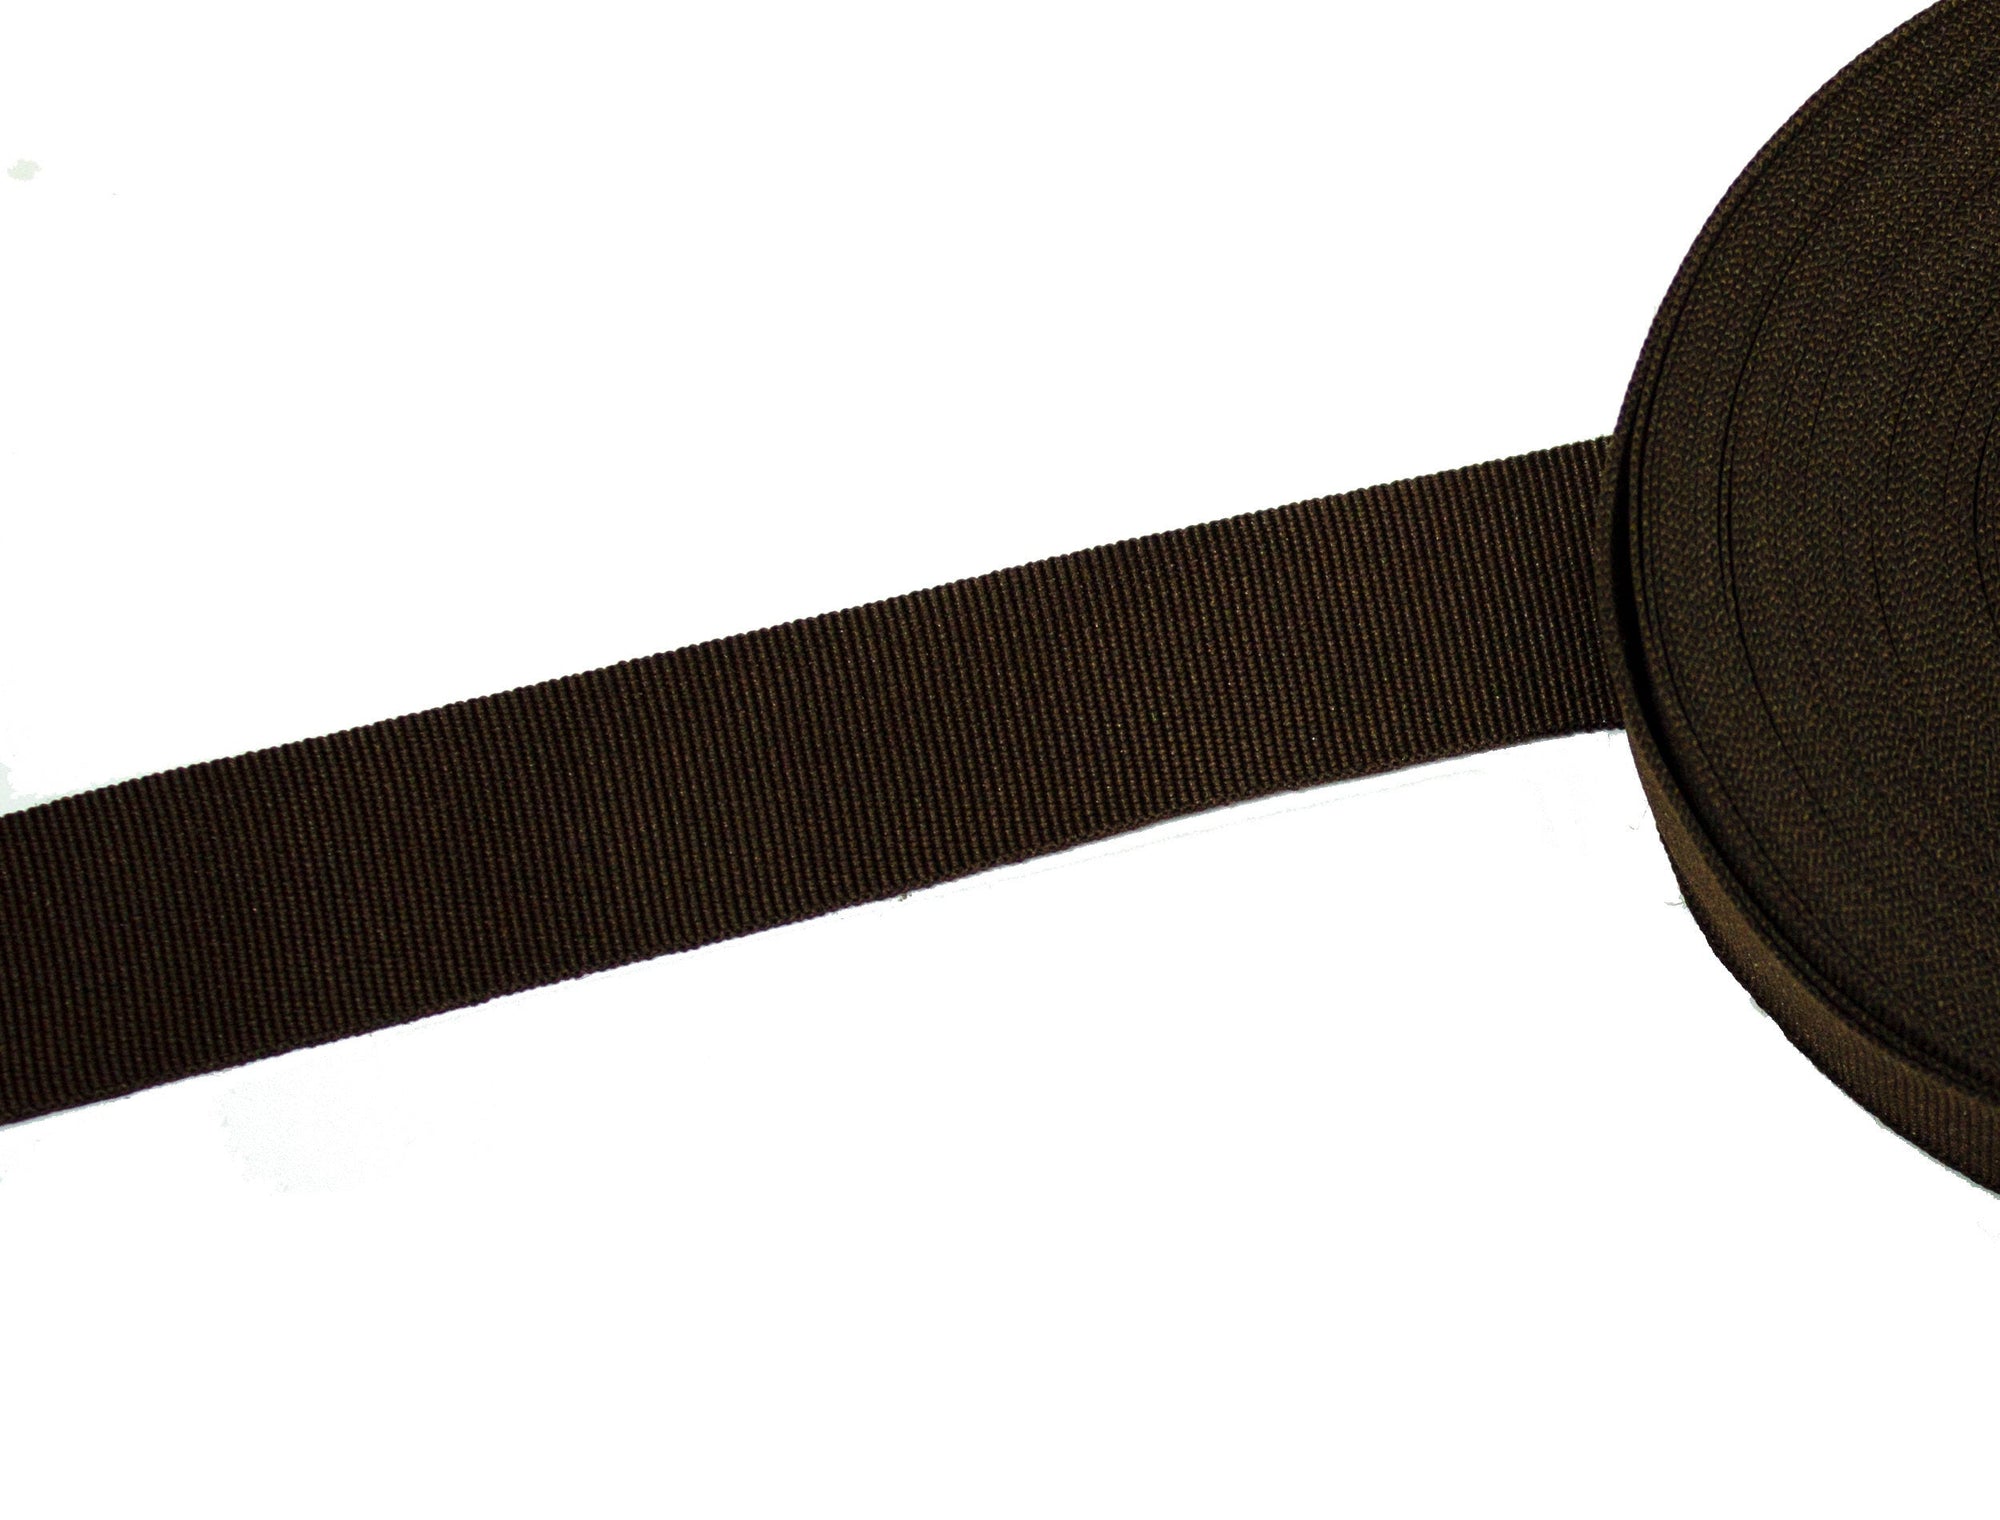 Vintage Grosgrain Ribbon Dark Brown Measures 25 mm Wide - Sold by the Yard